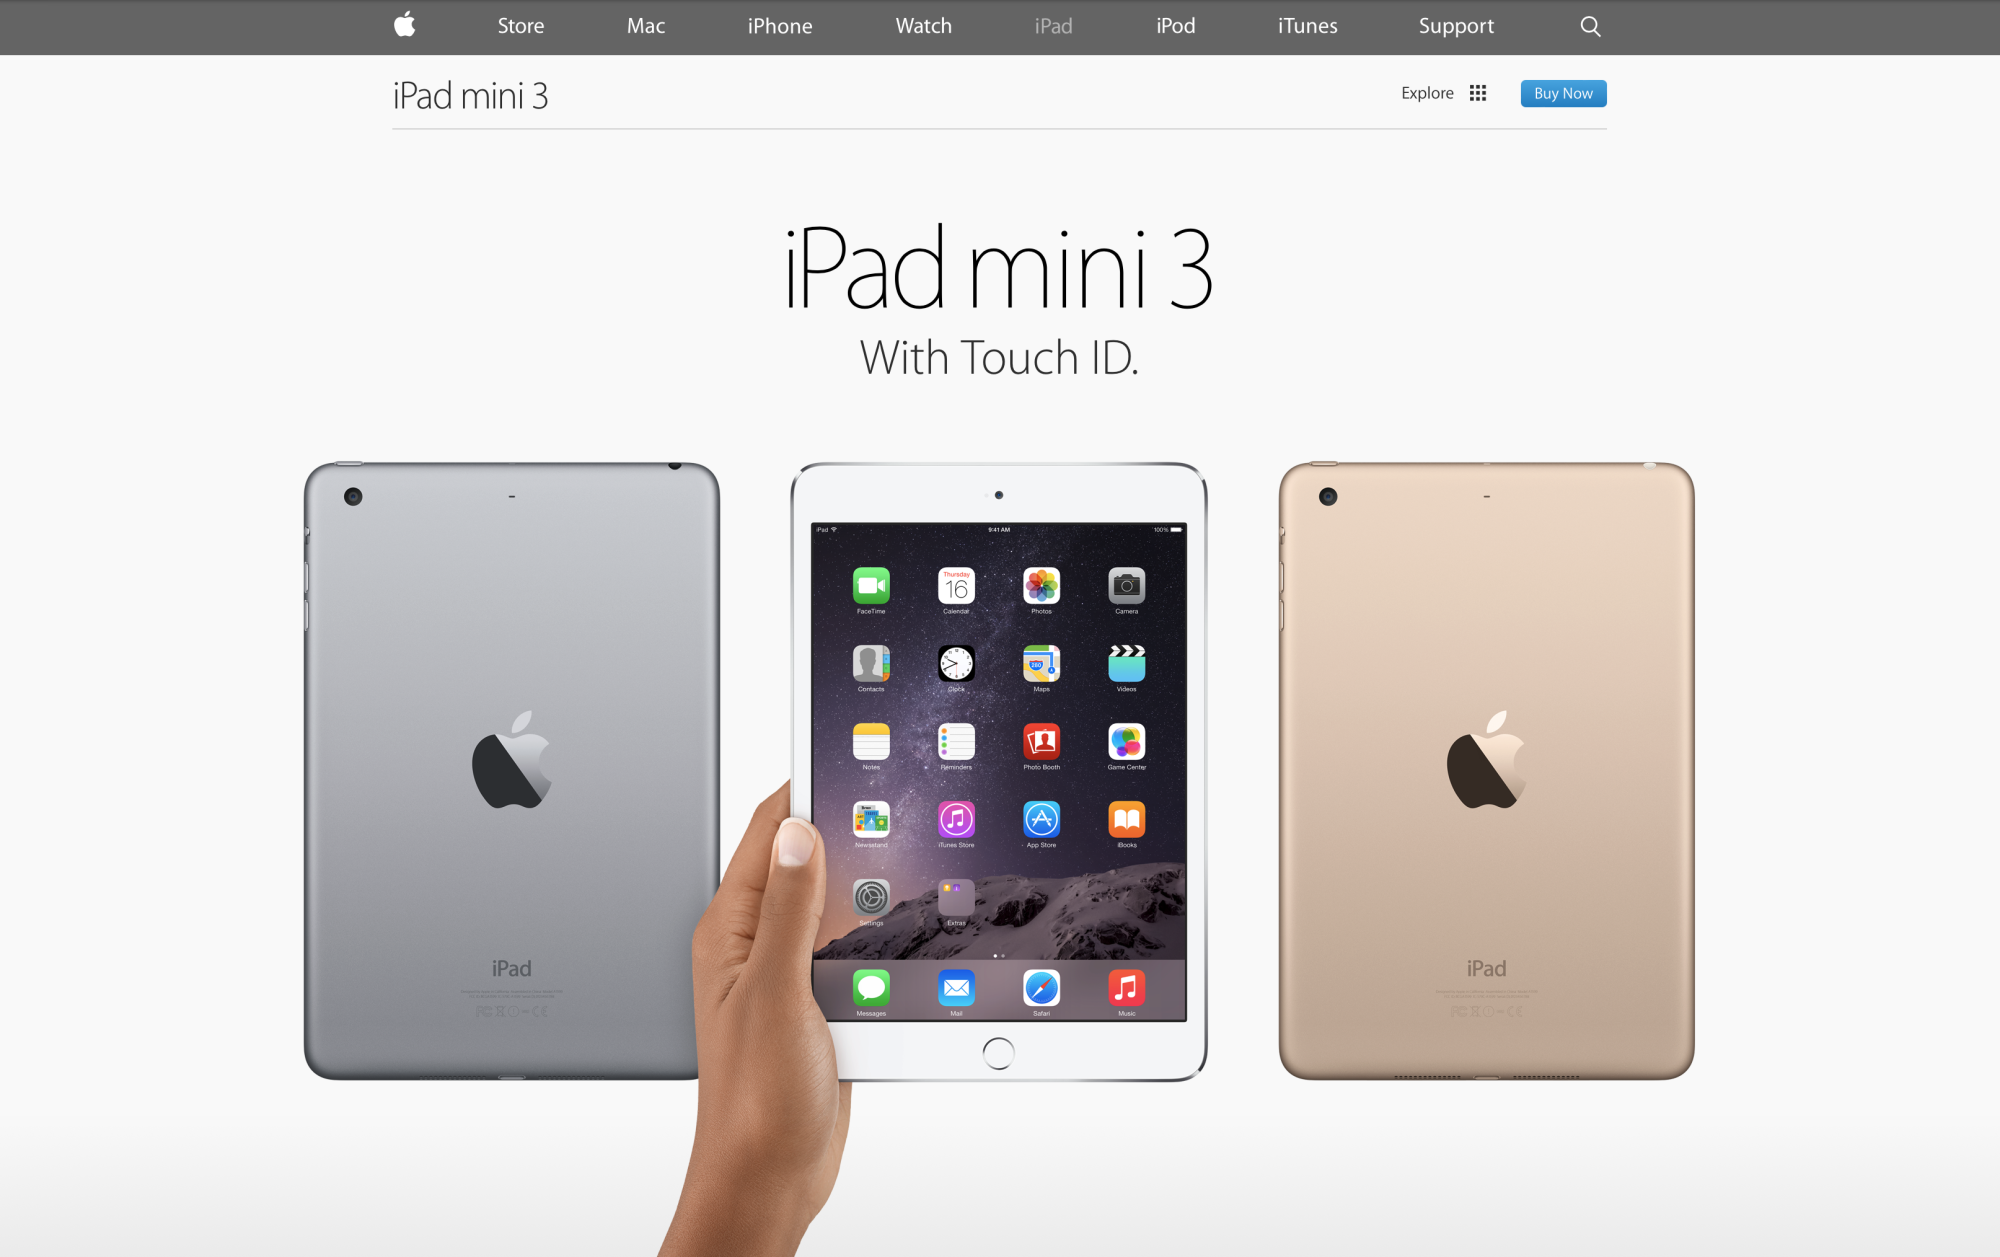 Apple Marks iPad Mini 3 as Obsolete Product - MacRumors